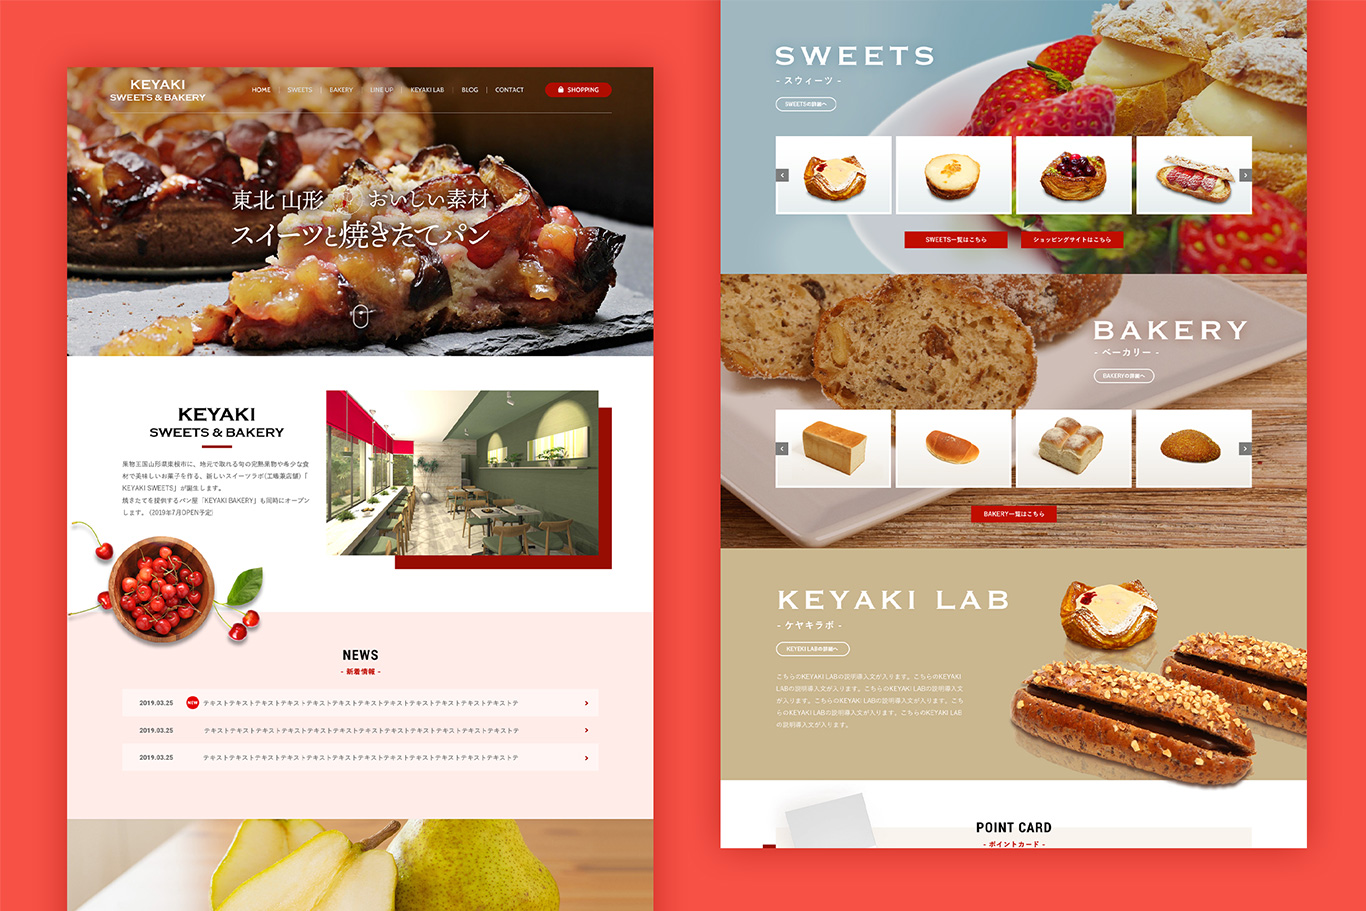 KEYAKI Sweets & Bakery